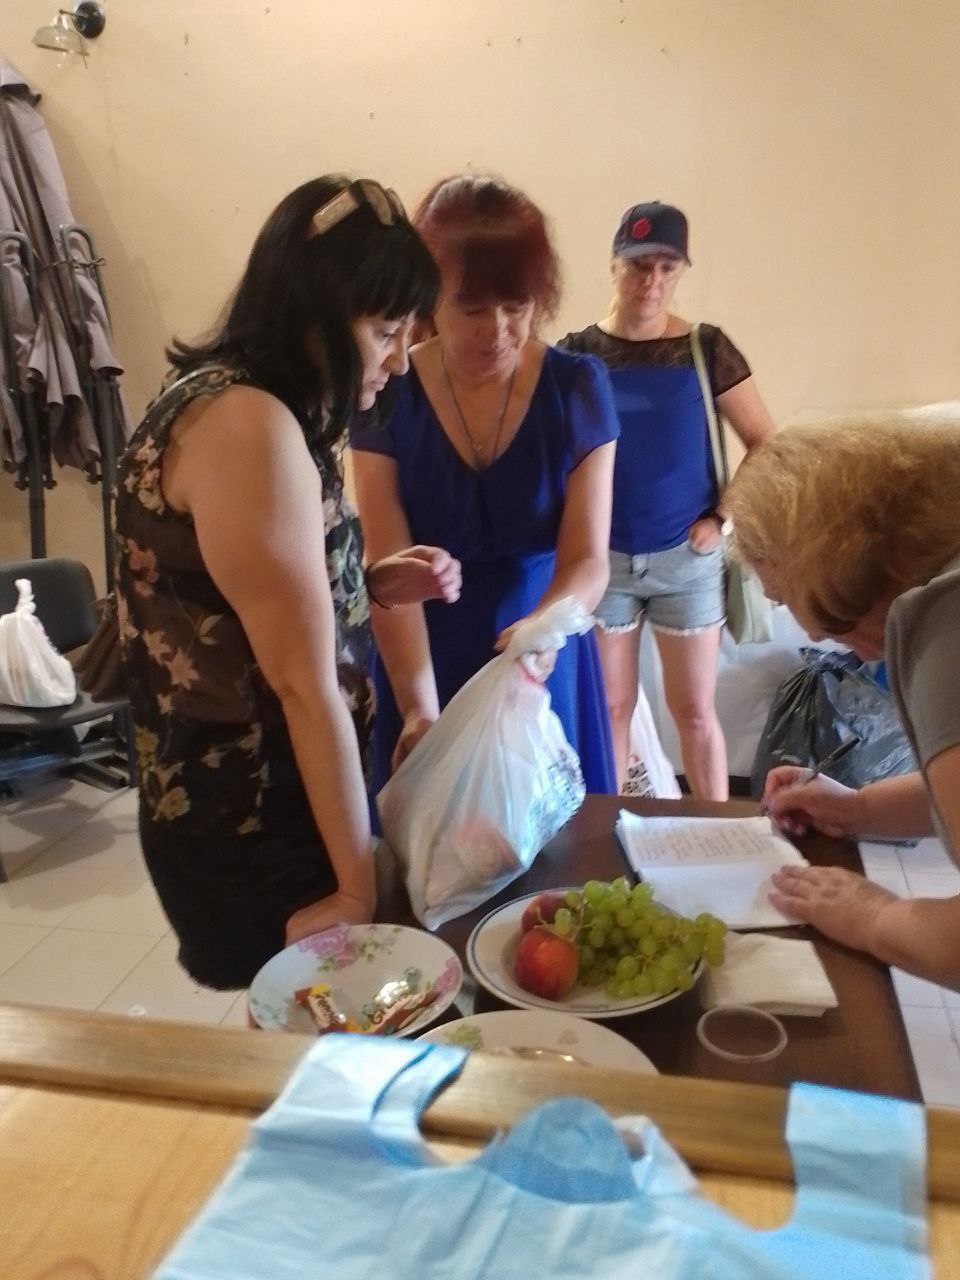 Волонтери білгород-дністровської філії "Фонду Добра та Любові" організували теплу зустріч з переселенцями, які вибралися з російського пекла